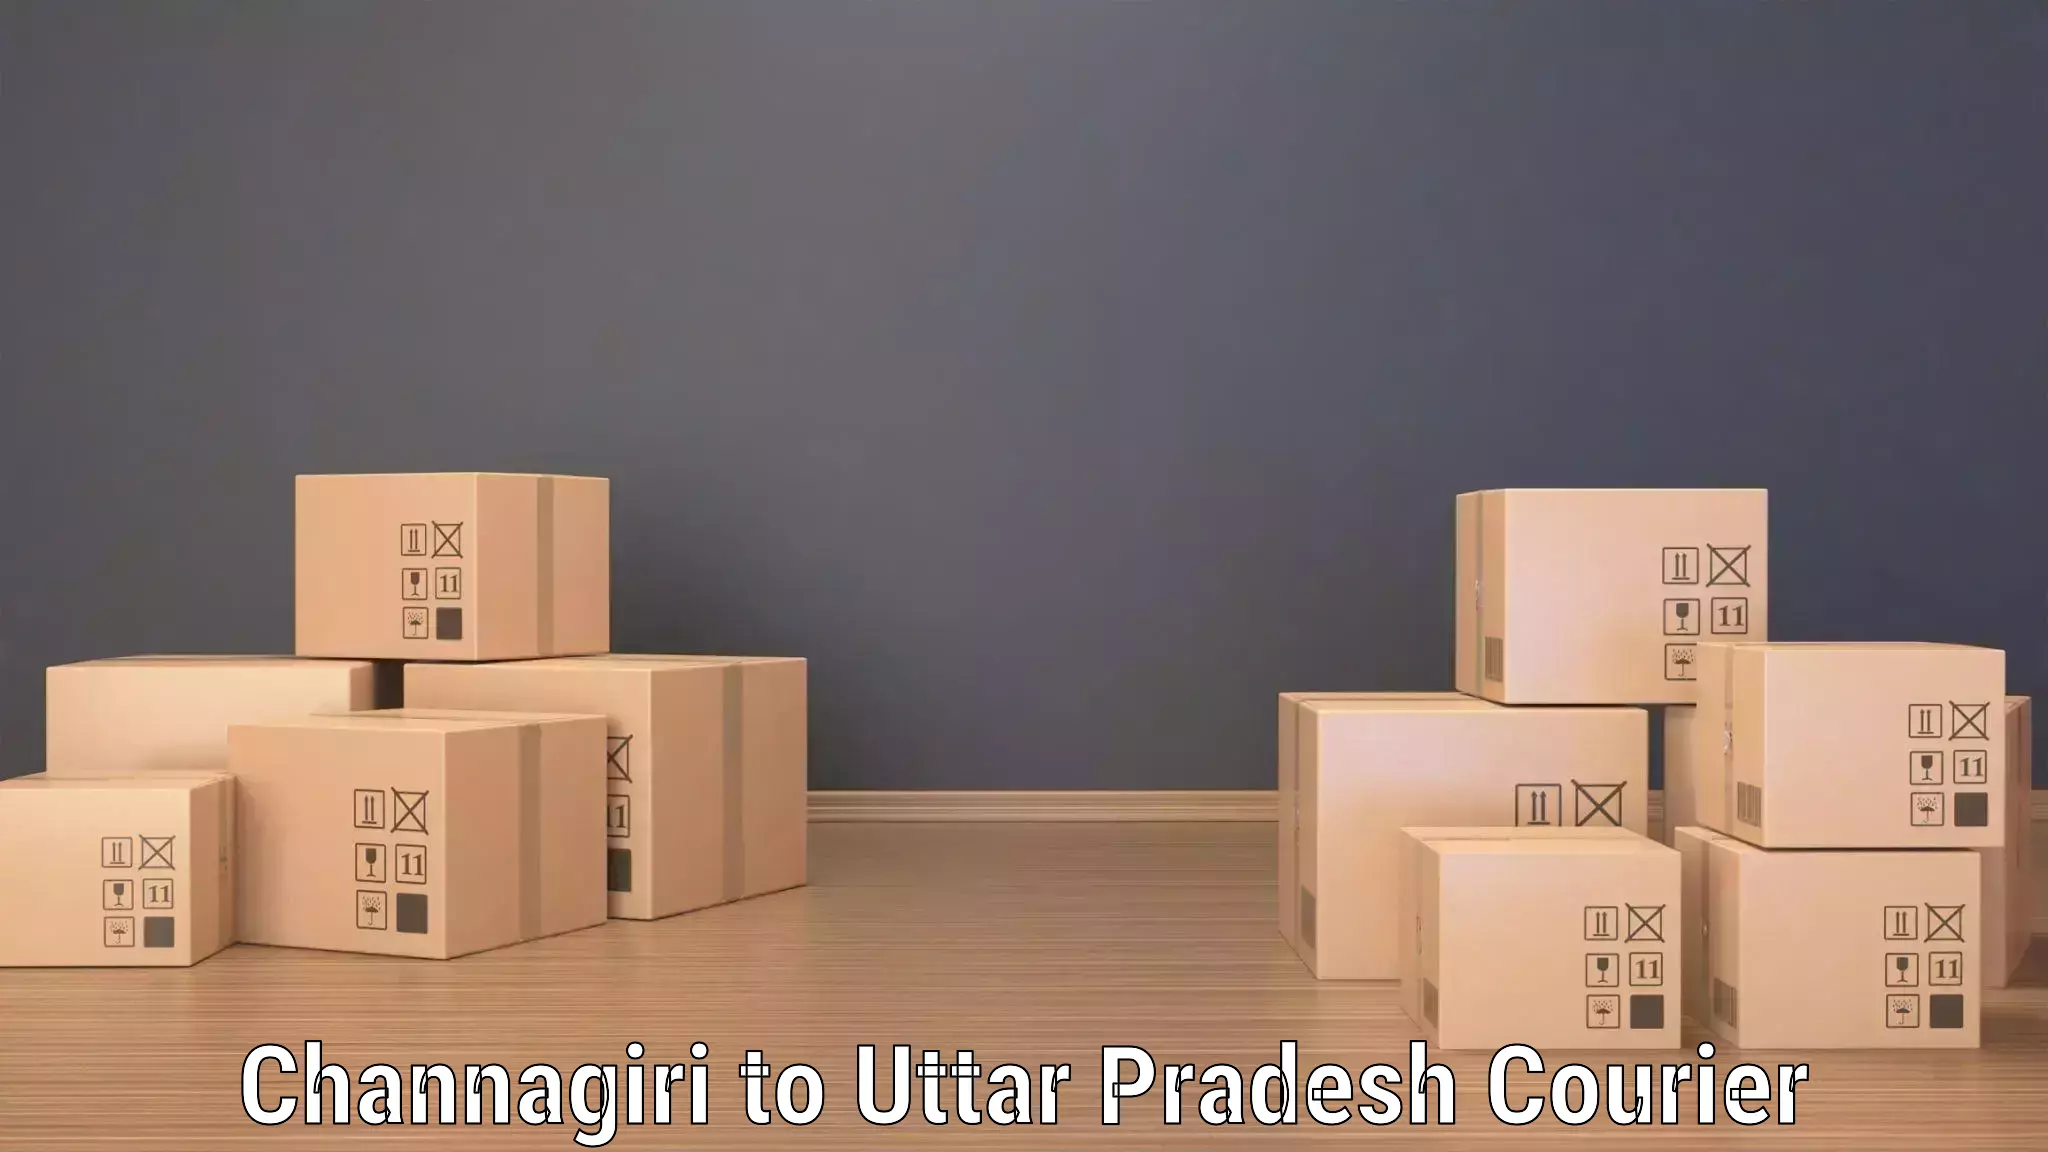 High-capacity shipping options Channagiri to Jhansi